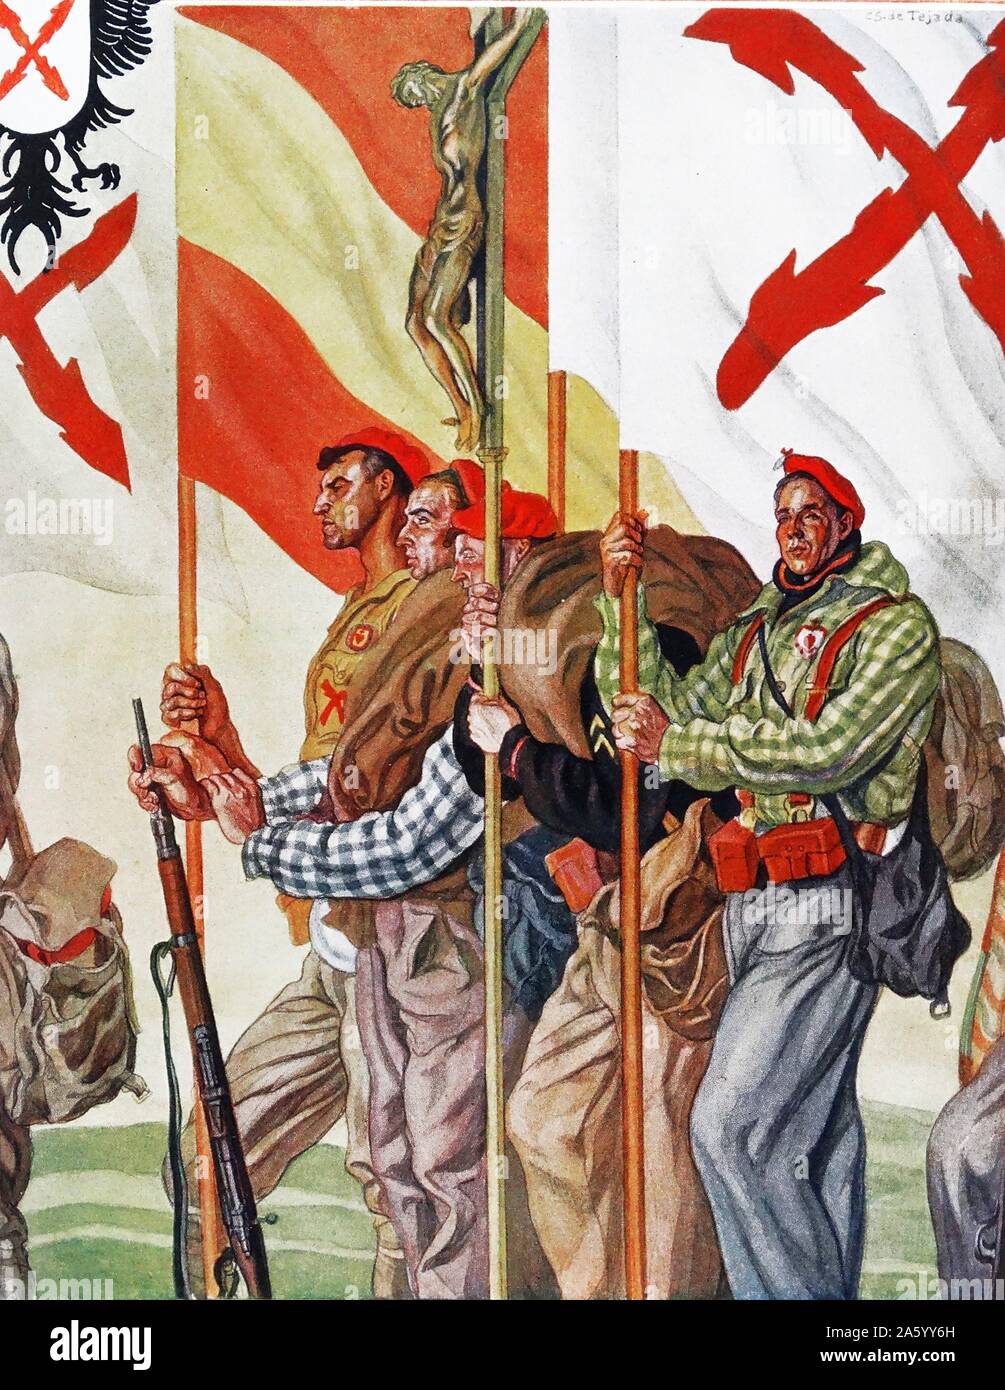 Abbildung zeigt Carlist (Monarchist) Miliz während des spanischen Bürgerkriegs. Durch Carlos Saenz de Tejada (1897-1958), spanischer Maler und Illustrator; identifiziert mit der nationalistischen (faschistischen) Seite im spanischen Bürgerkrieg. Stockfoto